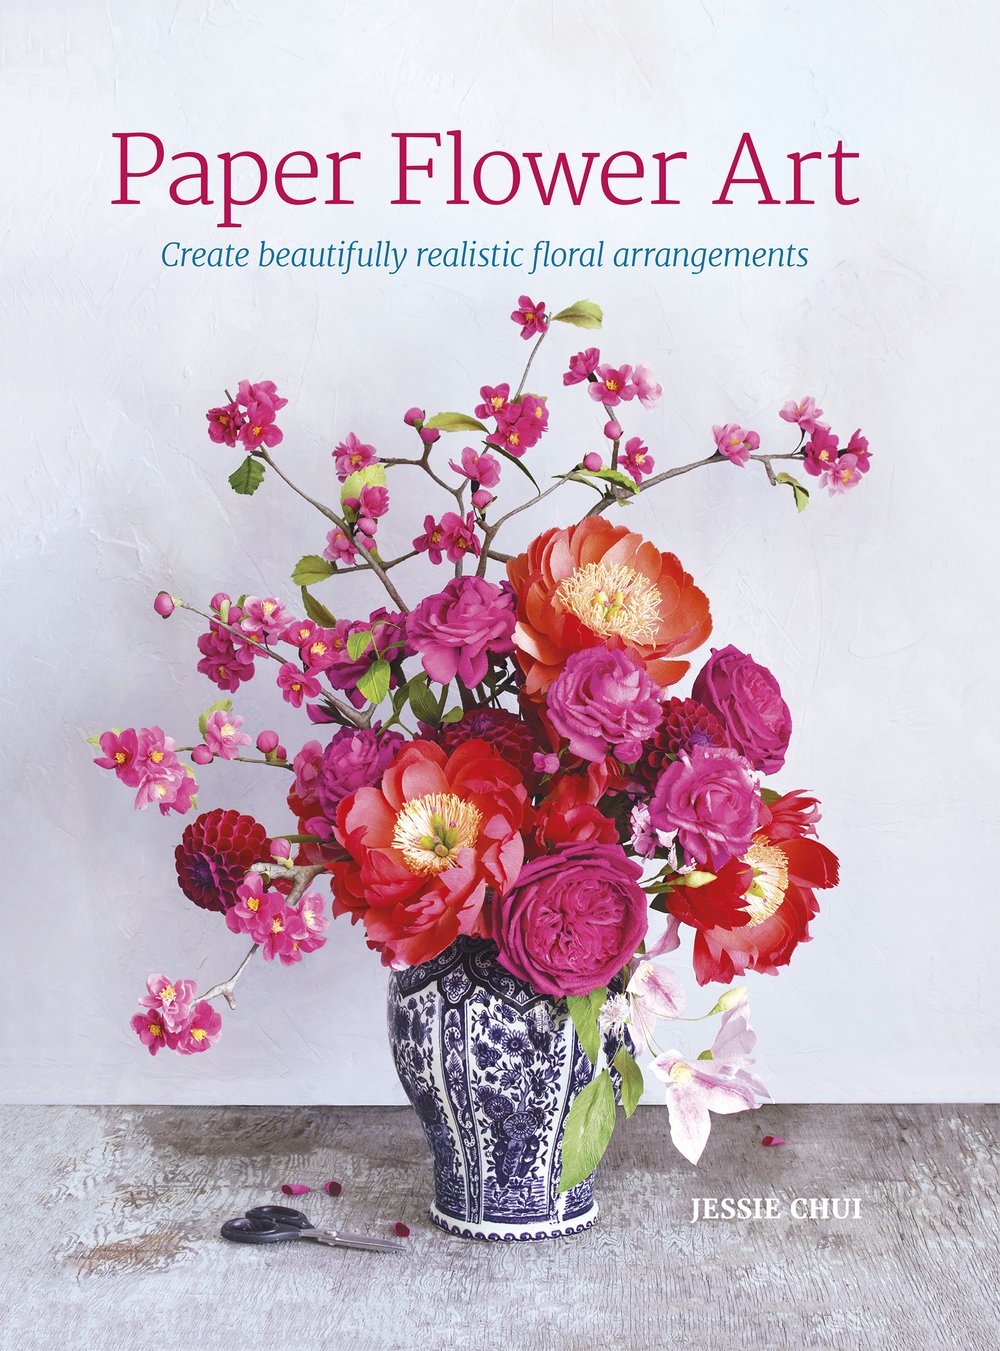 Paper Flower Art book cover (hardcover).jpg